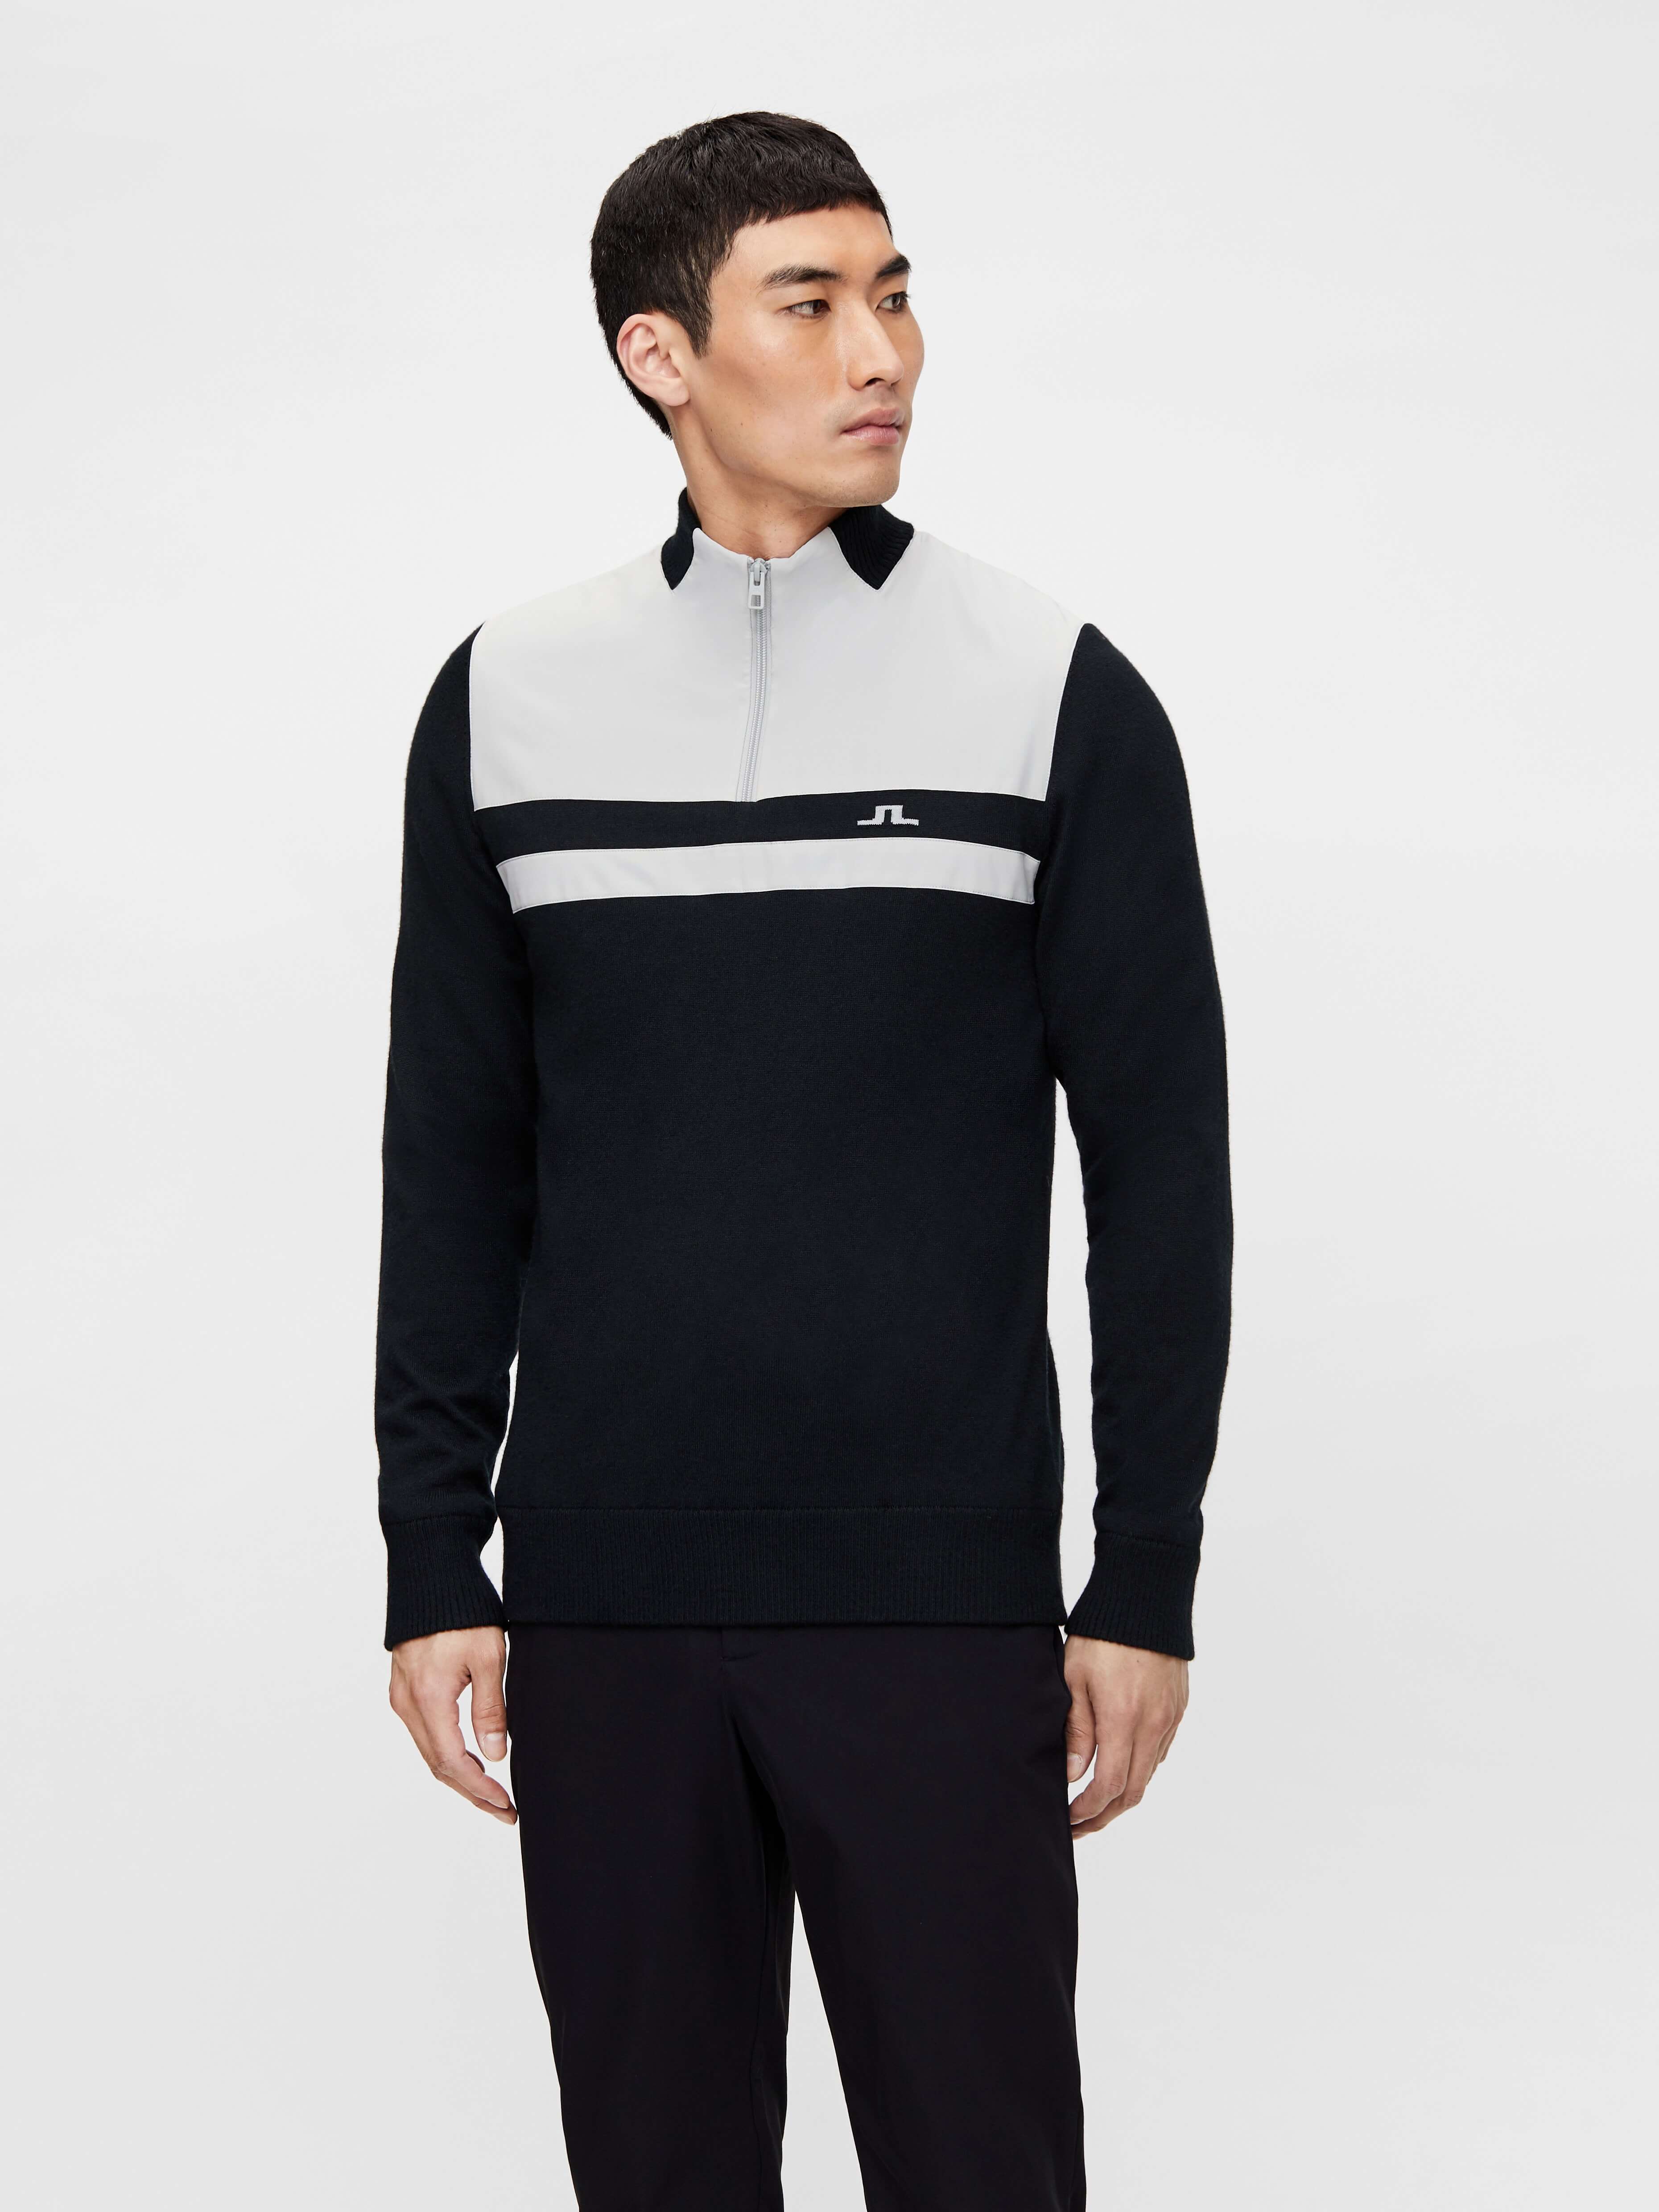 'Mathis' Windbreaker Golf Sweater/Heavy knit - MEN / AW20